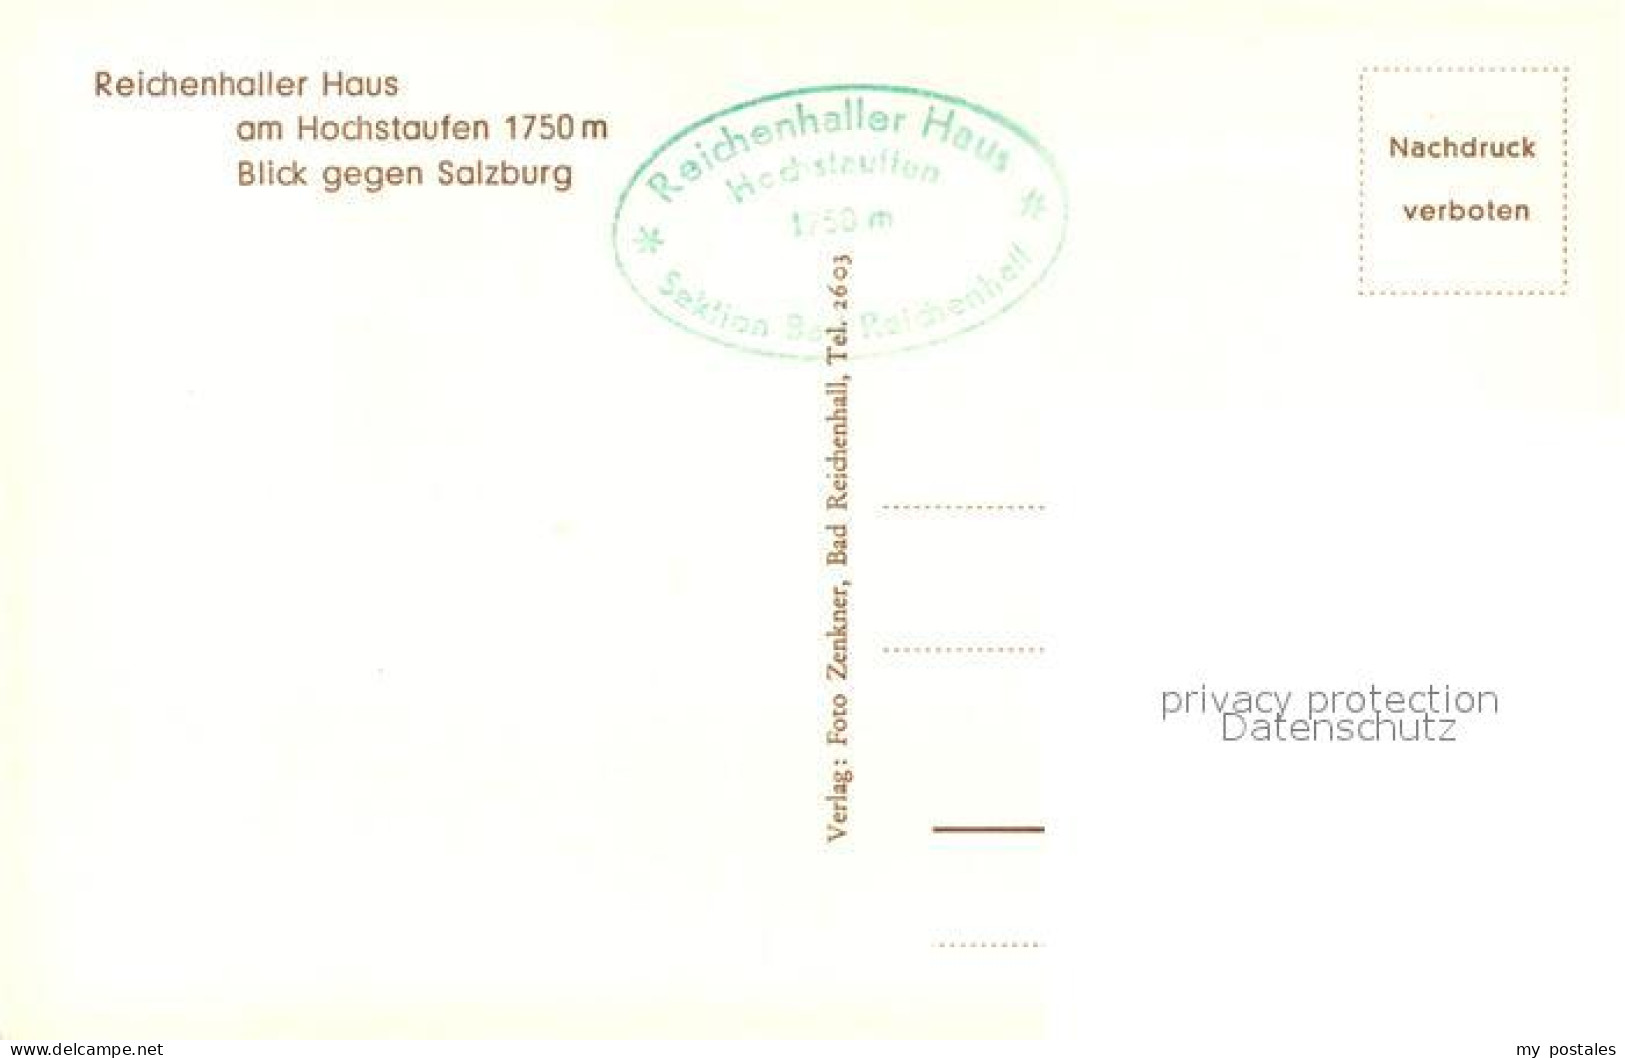 73369775 Reichenhaller Haus Hochstaufen Reichenhaller Haus - Bad Reichenhall